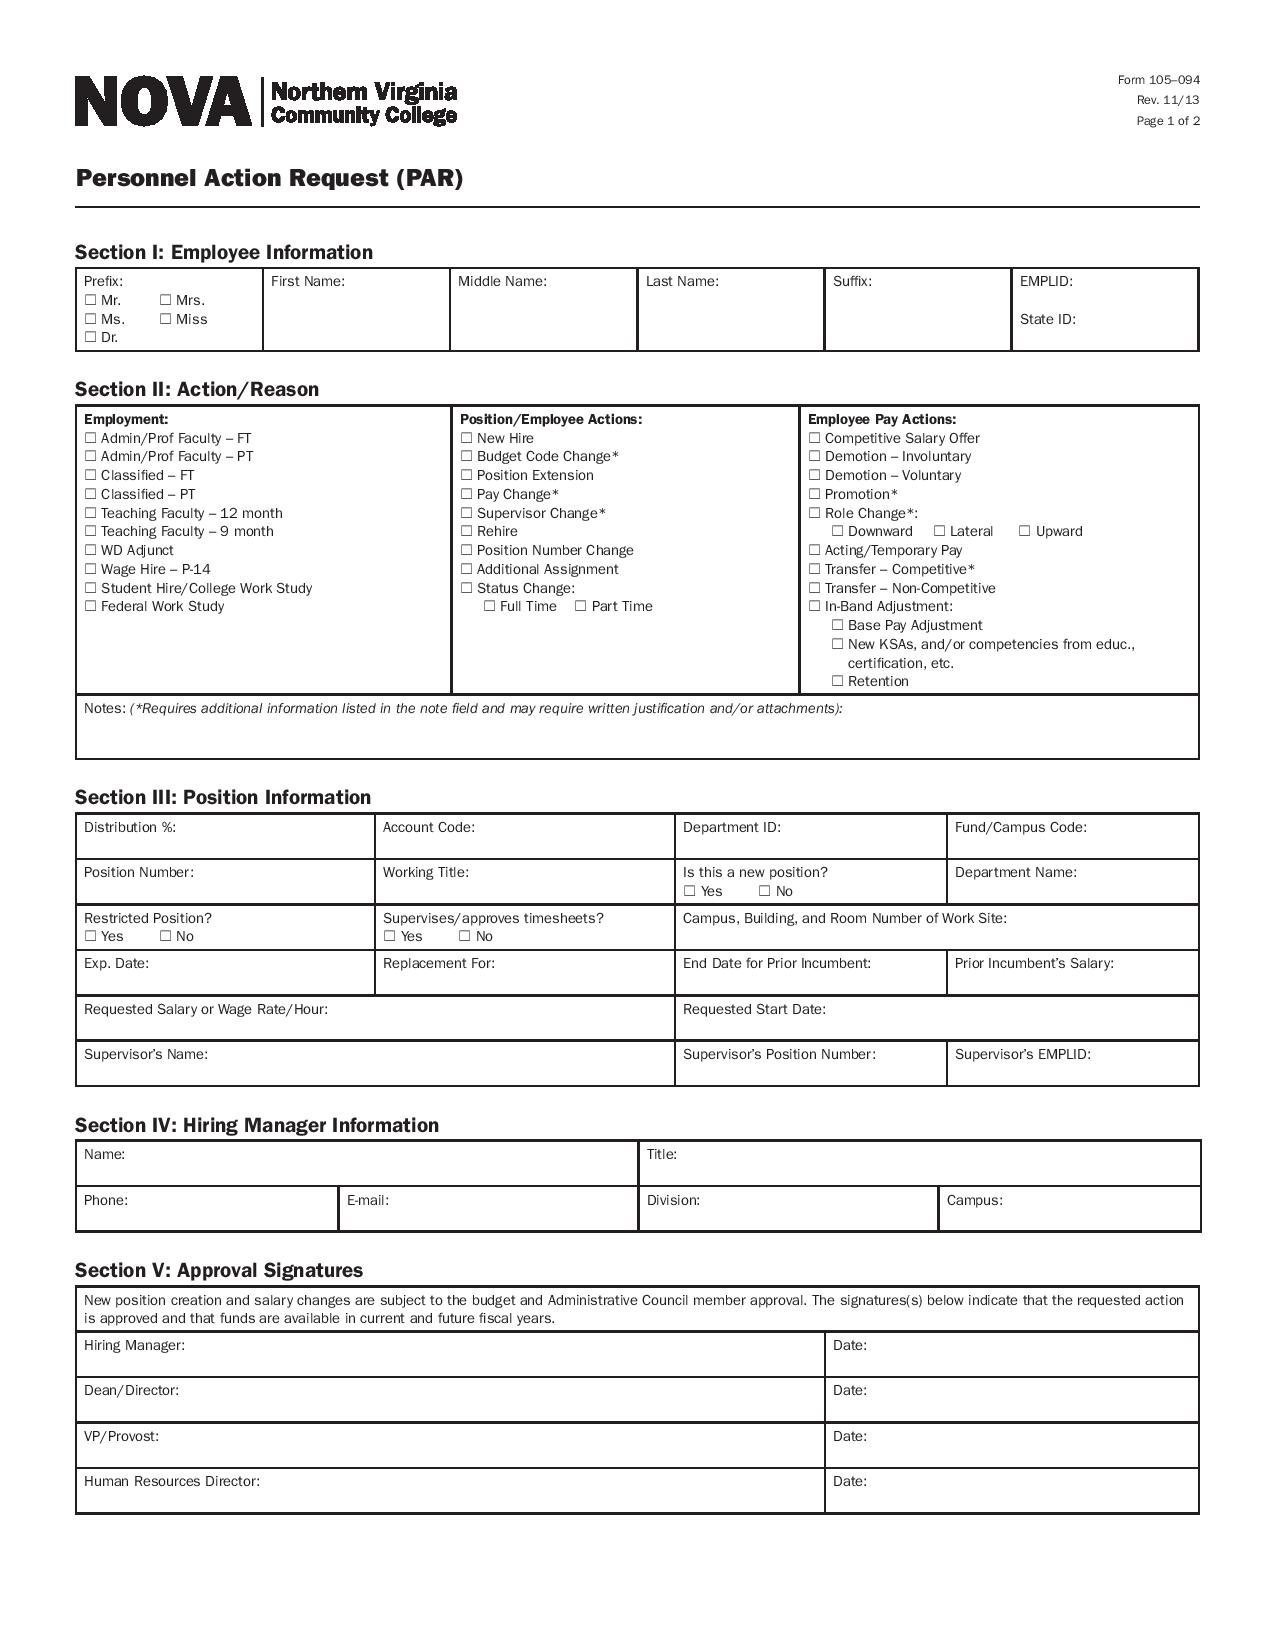 personnel action request form pdf page 001